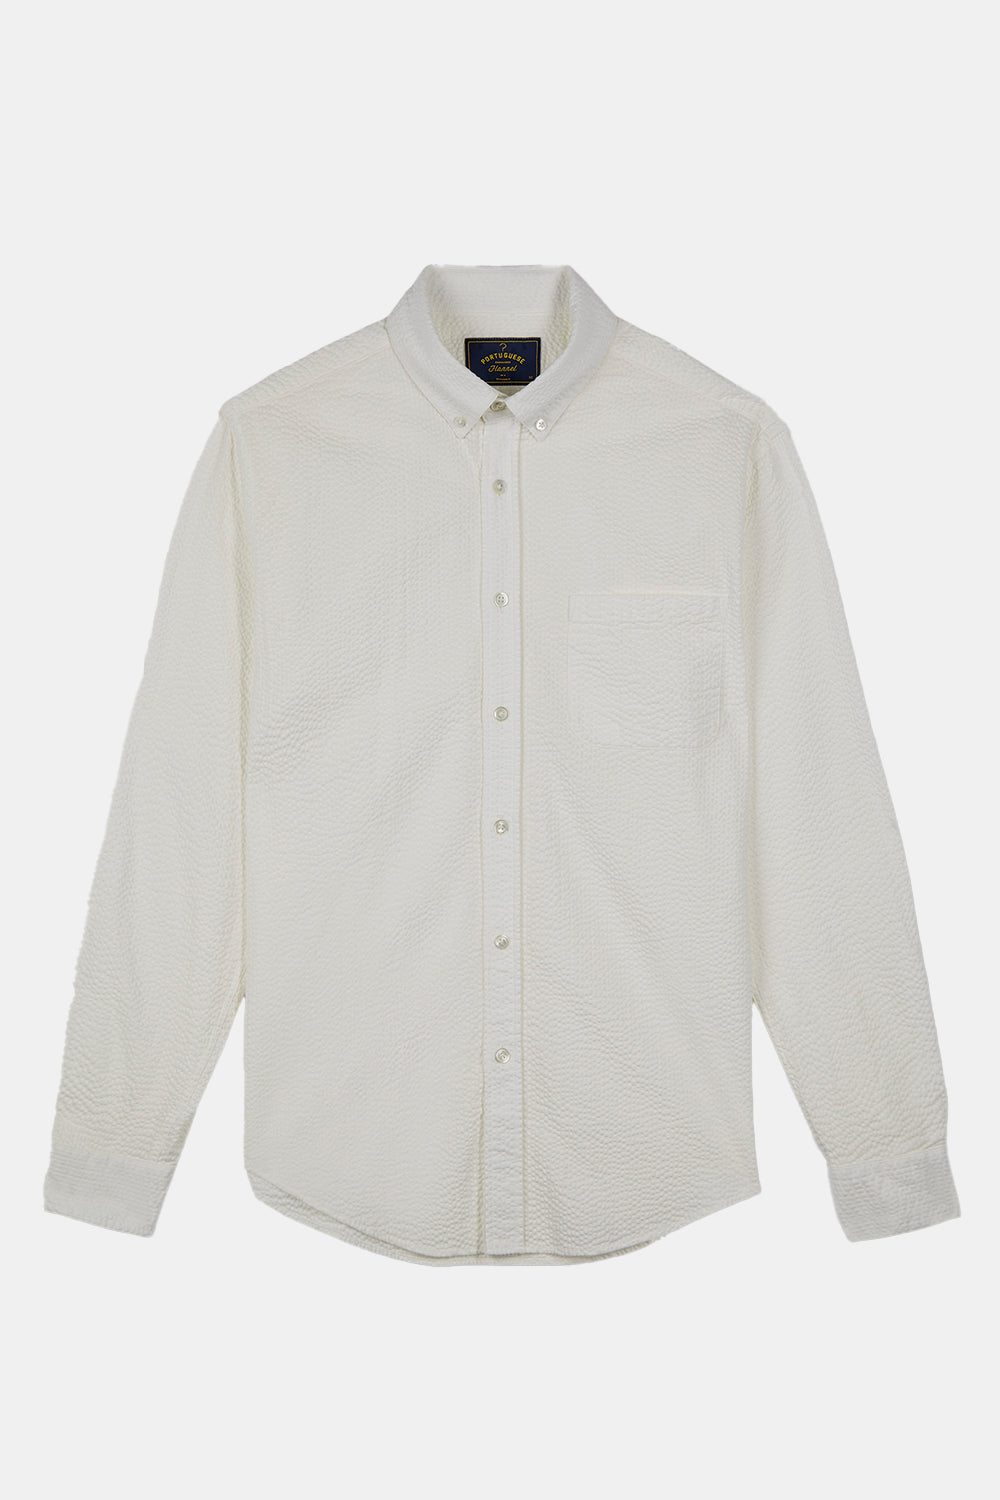 Portuguese Flannel Atlantico Shirt (White)